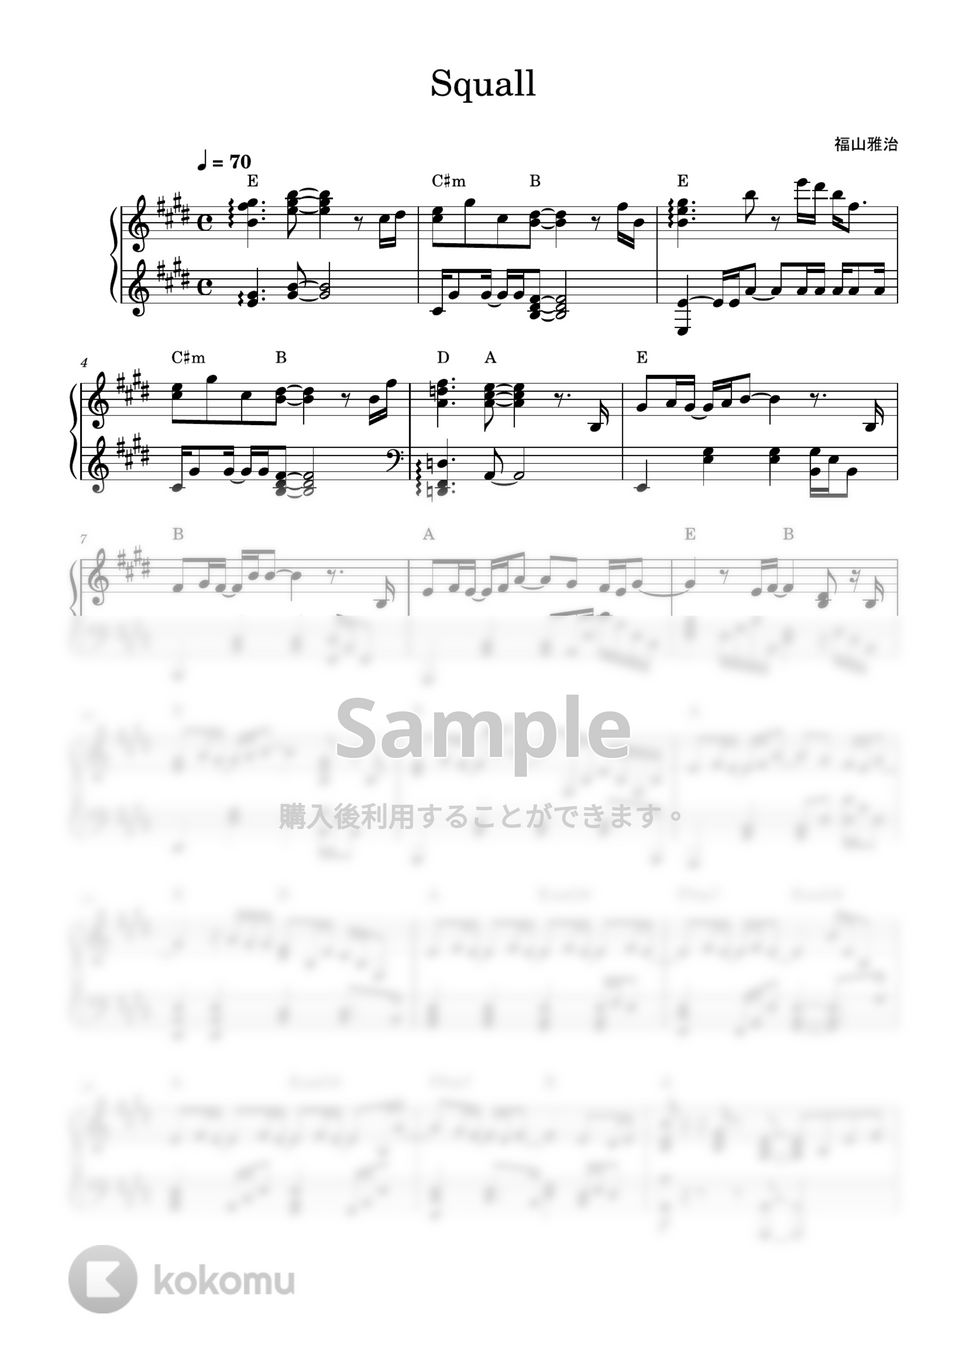 福山雅治 - Squall (ピアノソロ) by MIKA